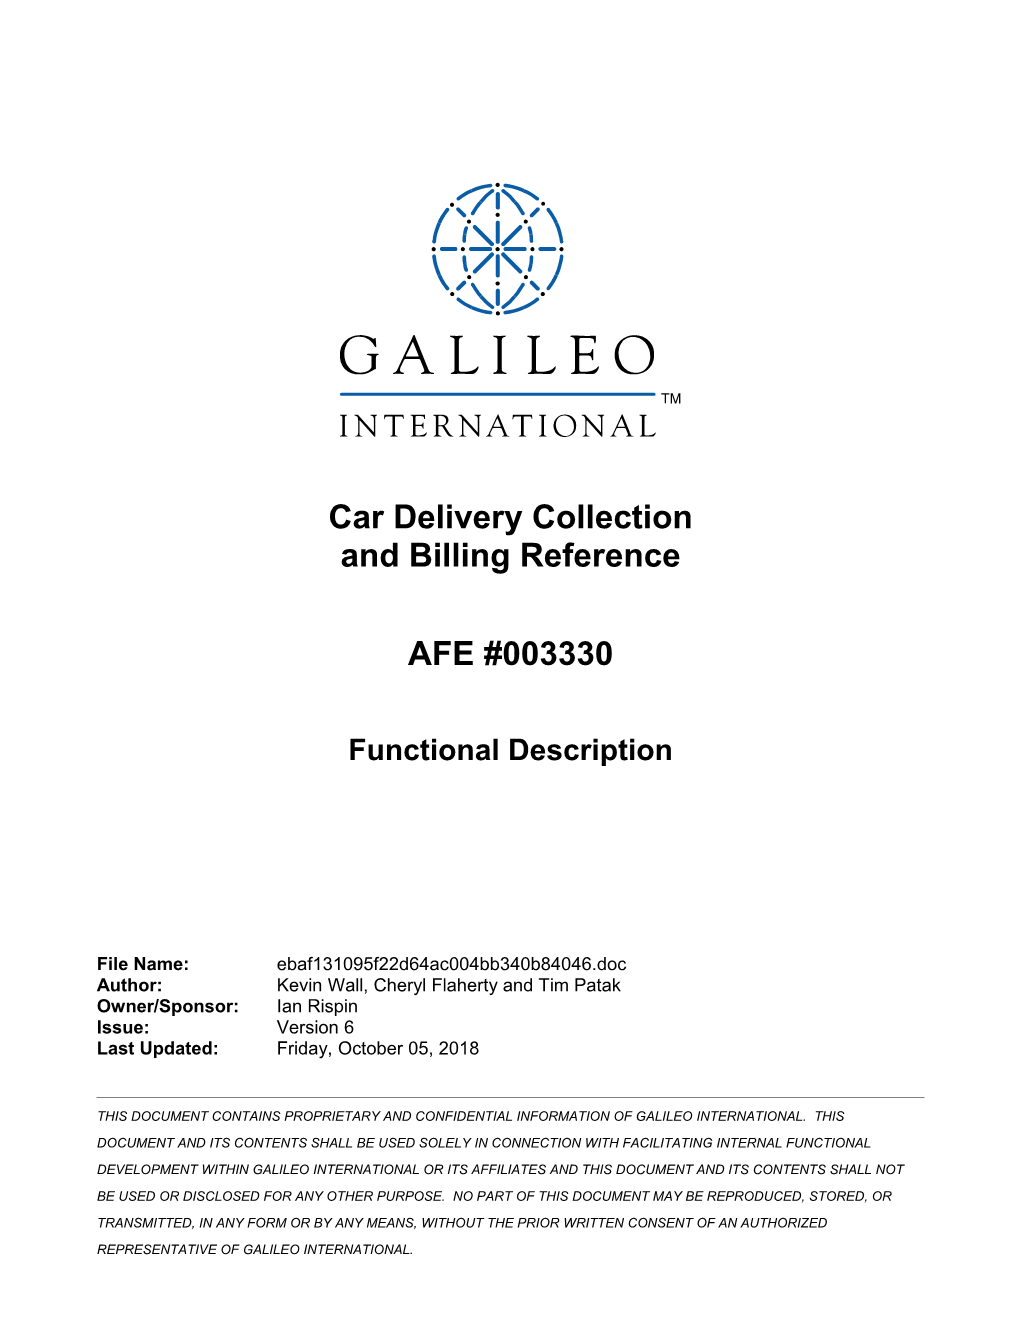 AFE 003330 Car Del Col and Billing Ref - Functional Description (V6)